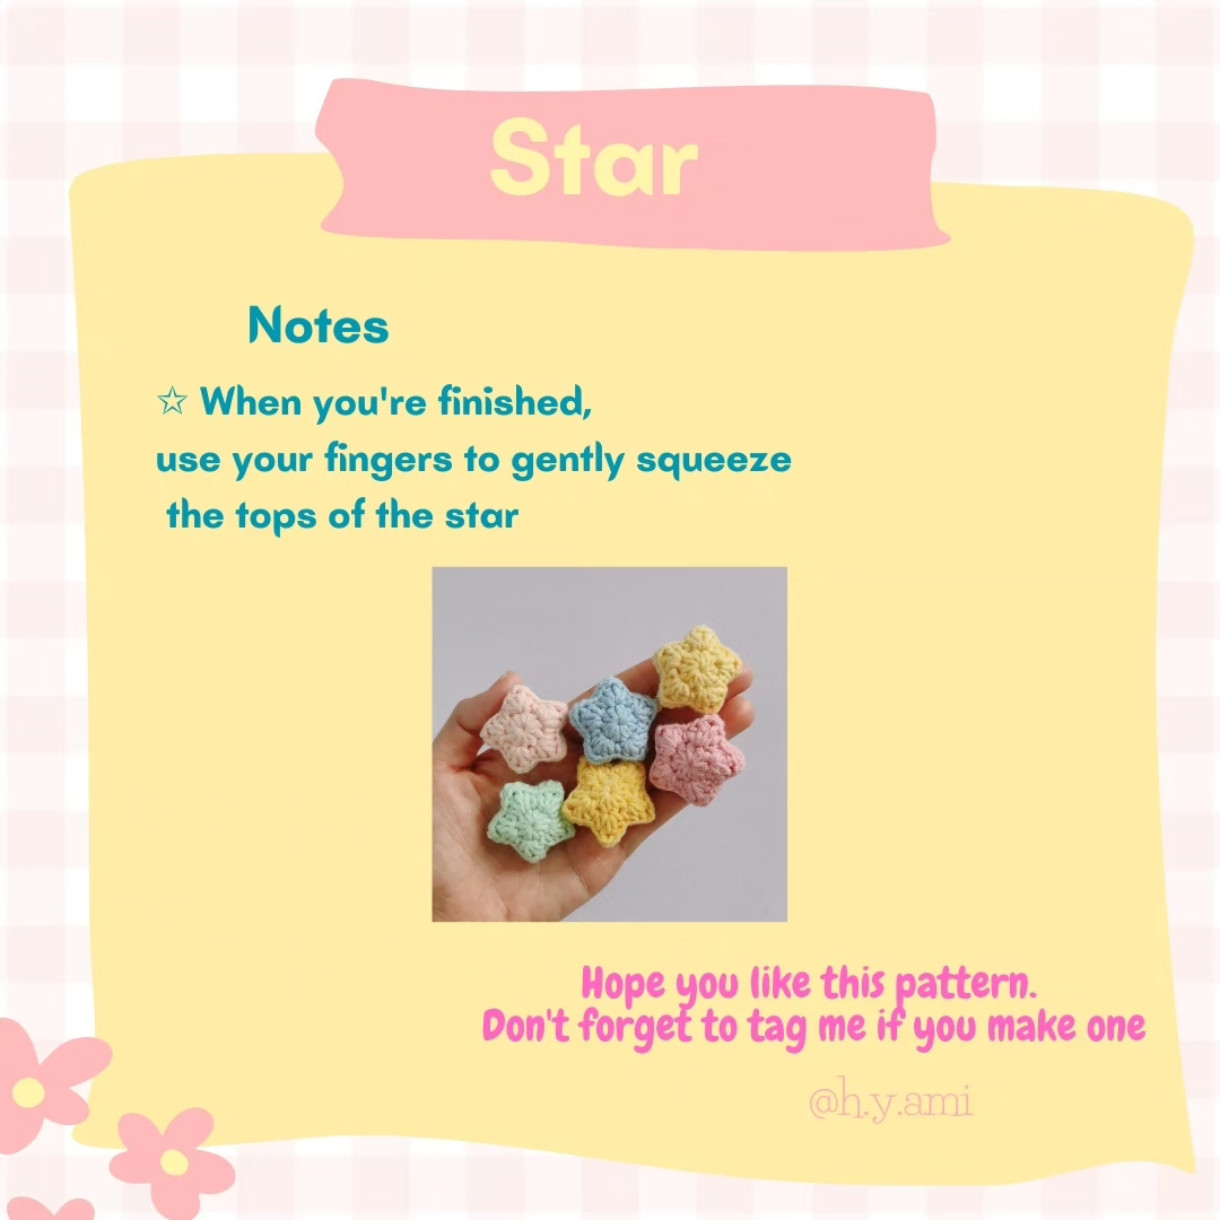 free crochet pattern star